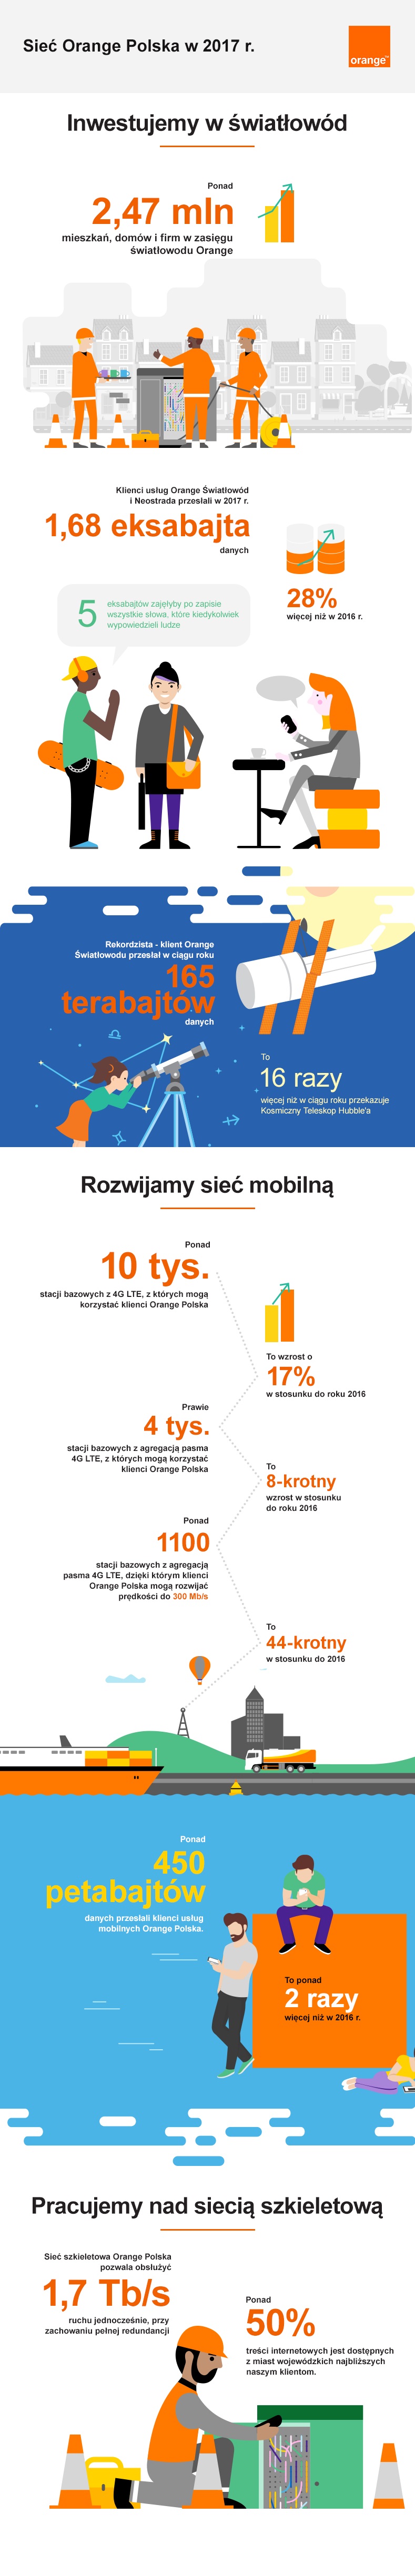 podsumowanie-roku-w-sieci-orange-polska-blog-infografika.jpg